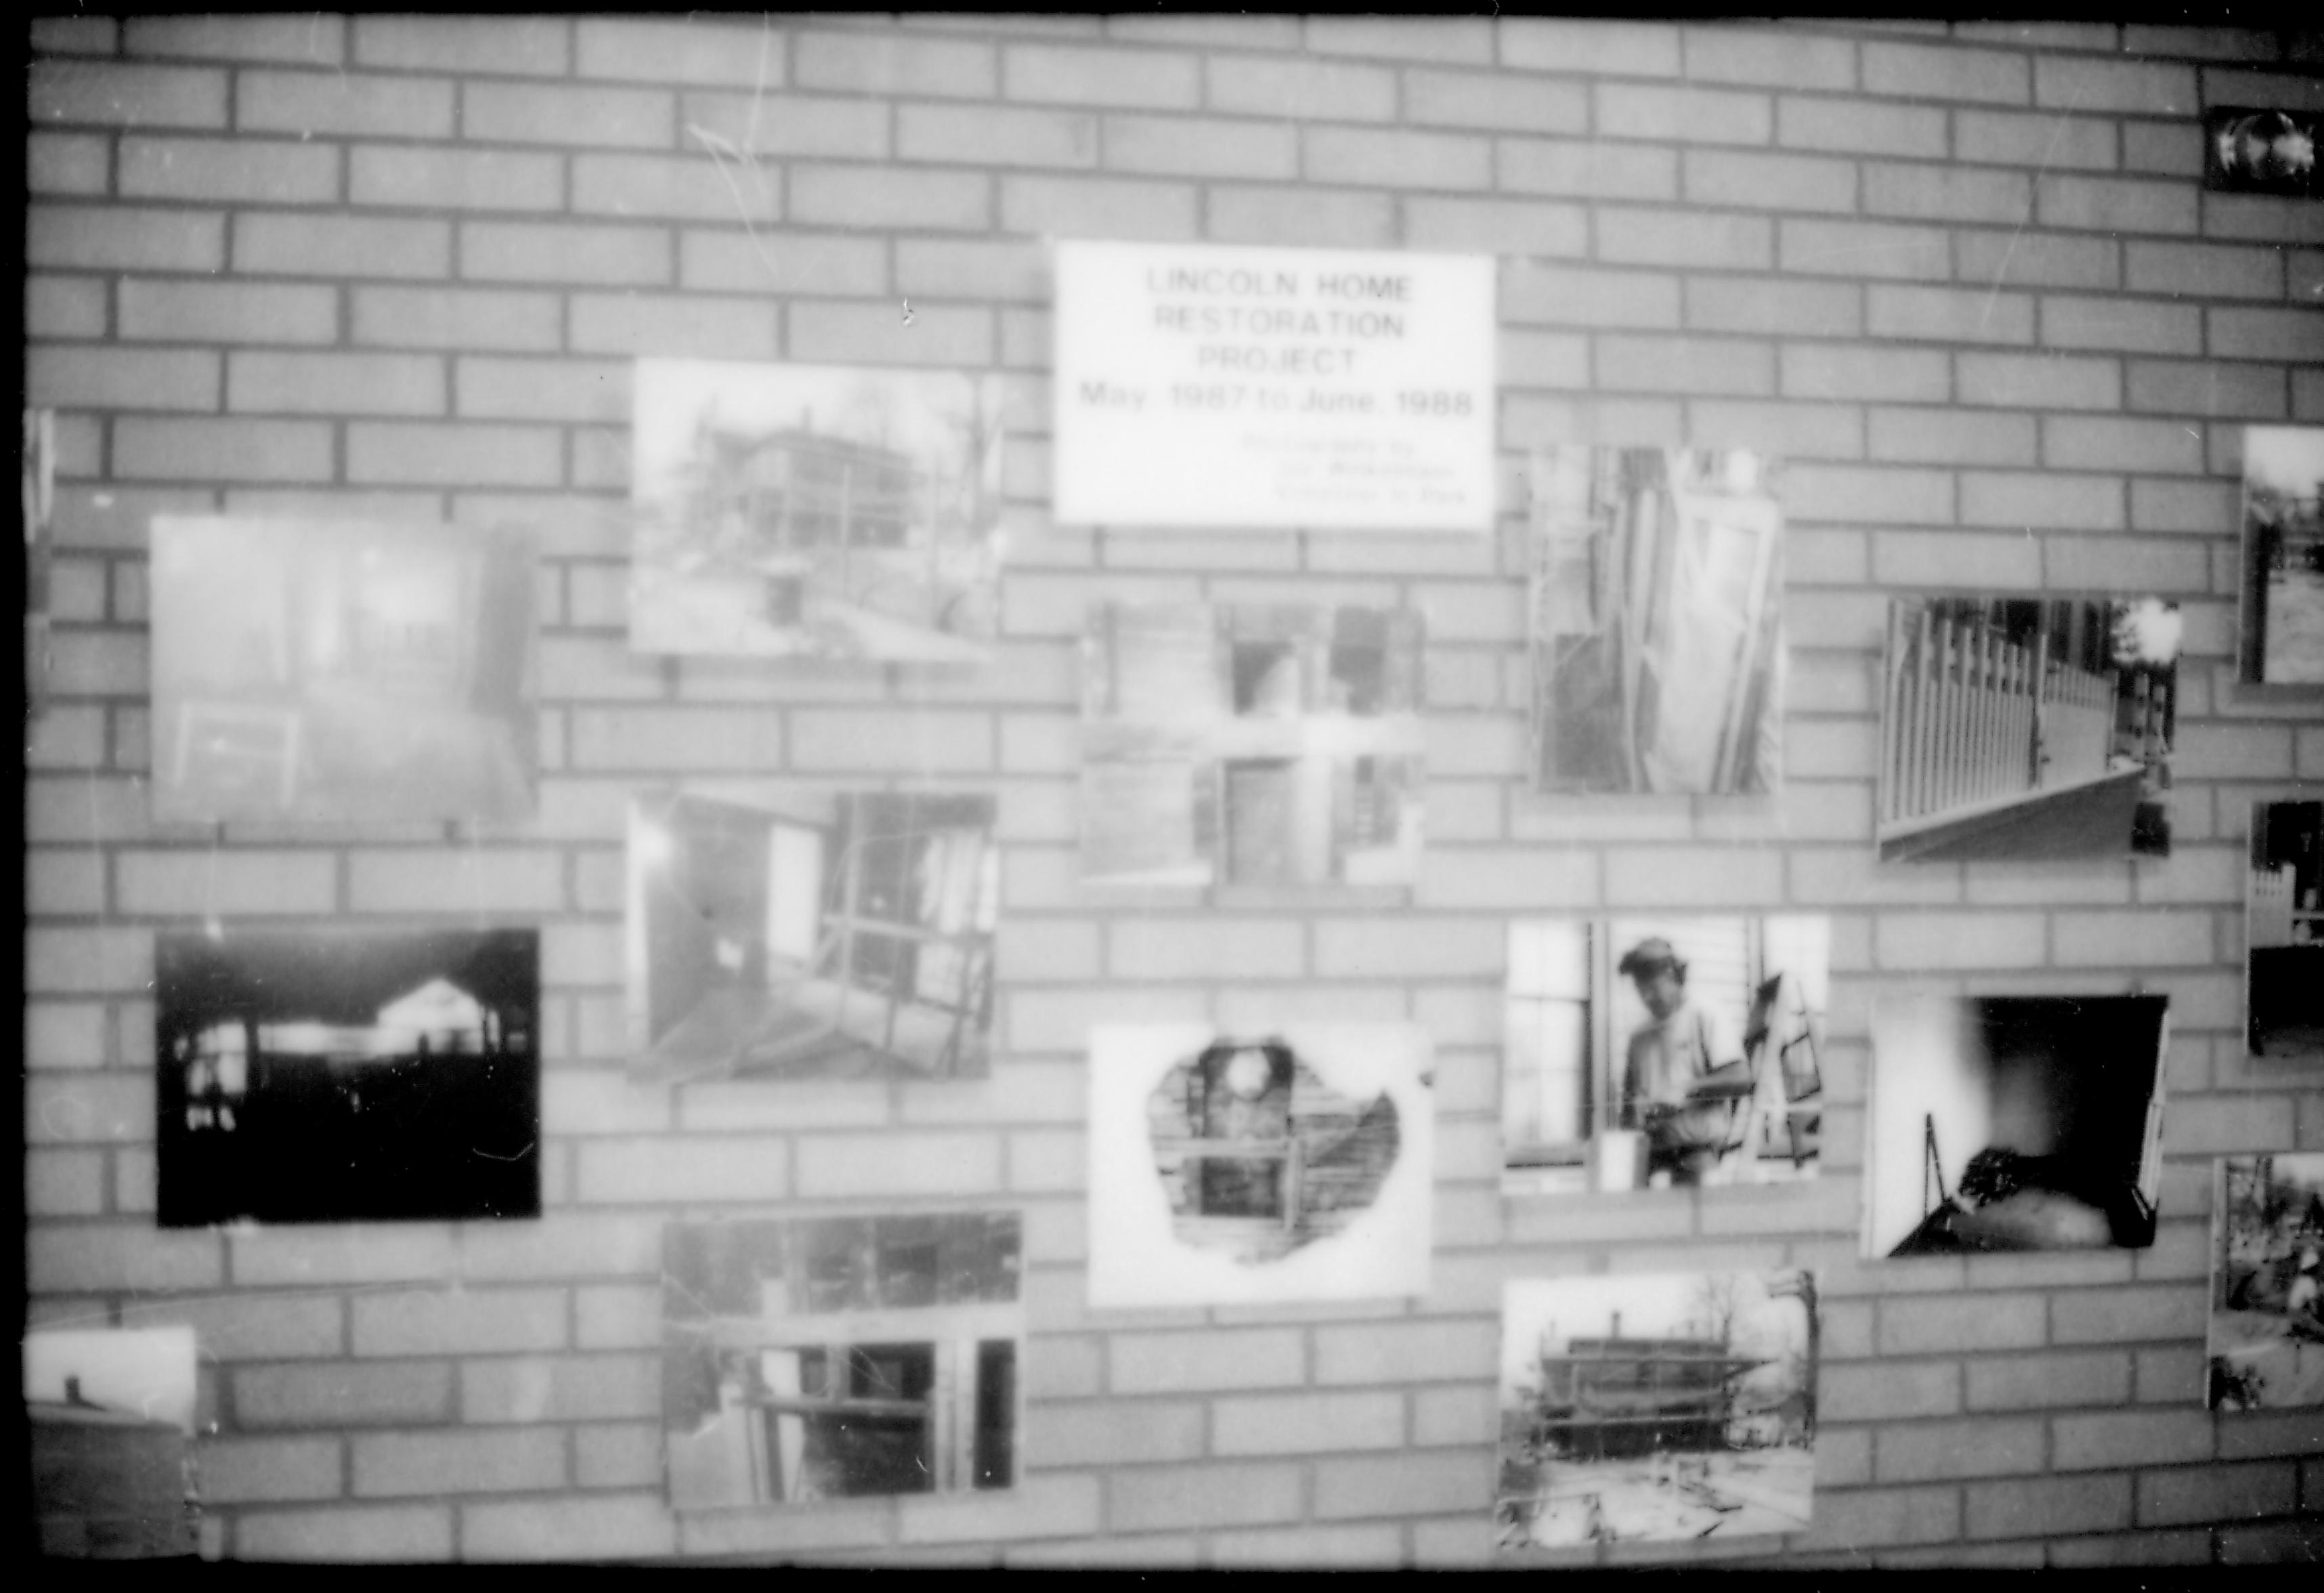 NA File Folder: 1989 - Lincoln Home - Handicap - 114 Visitors Center, Restoration Photo Display